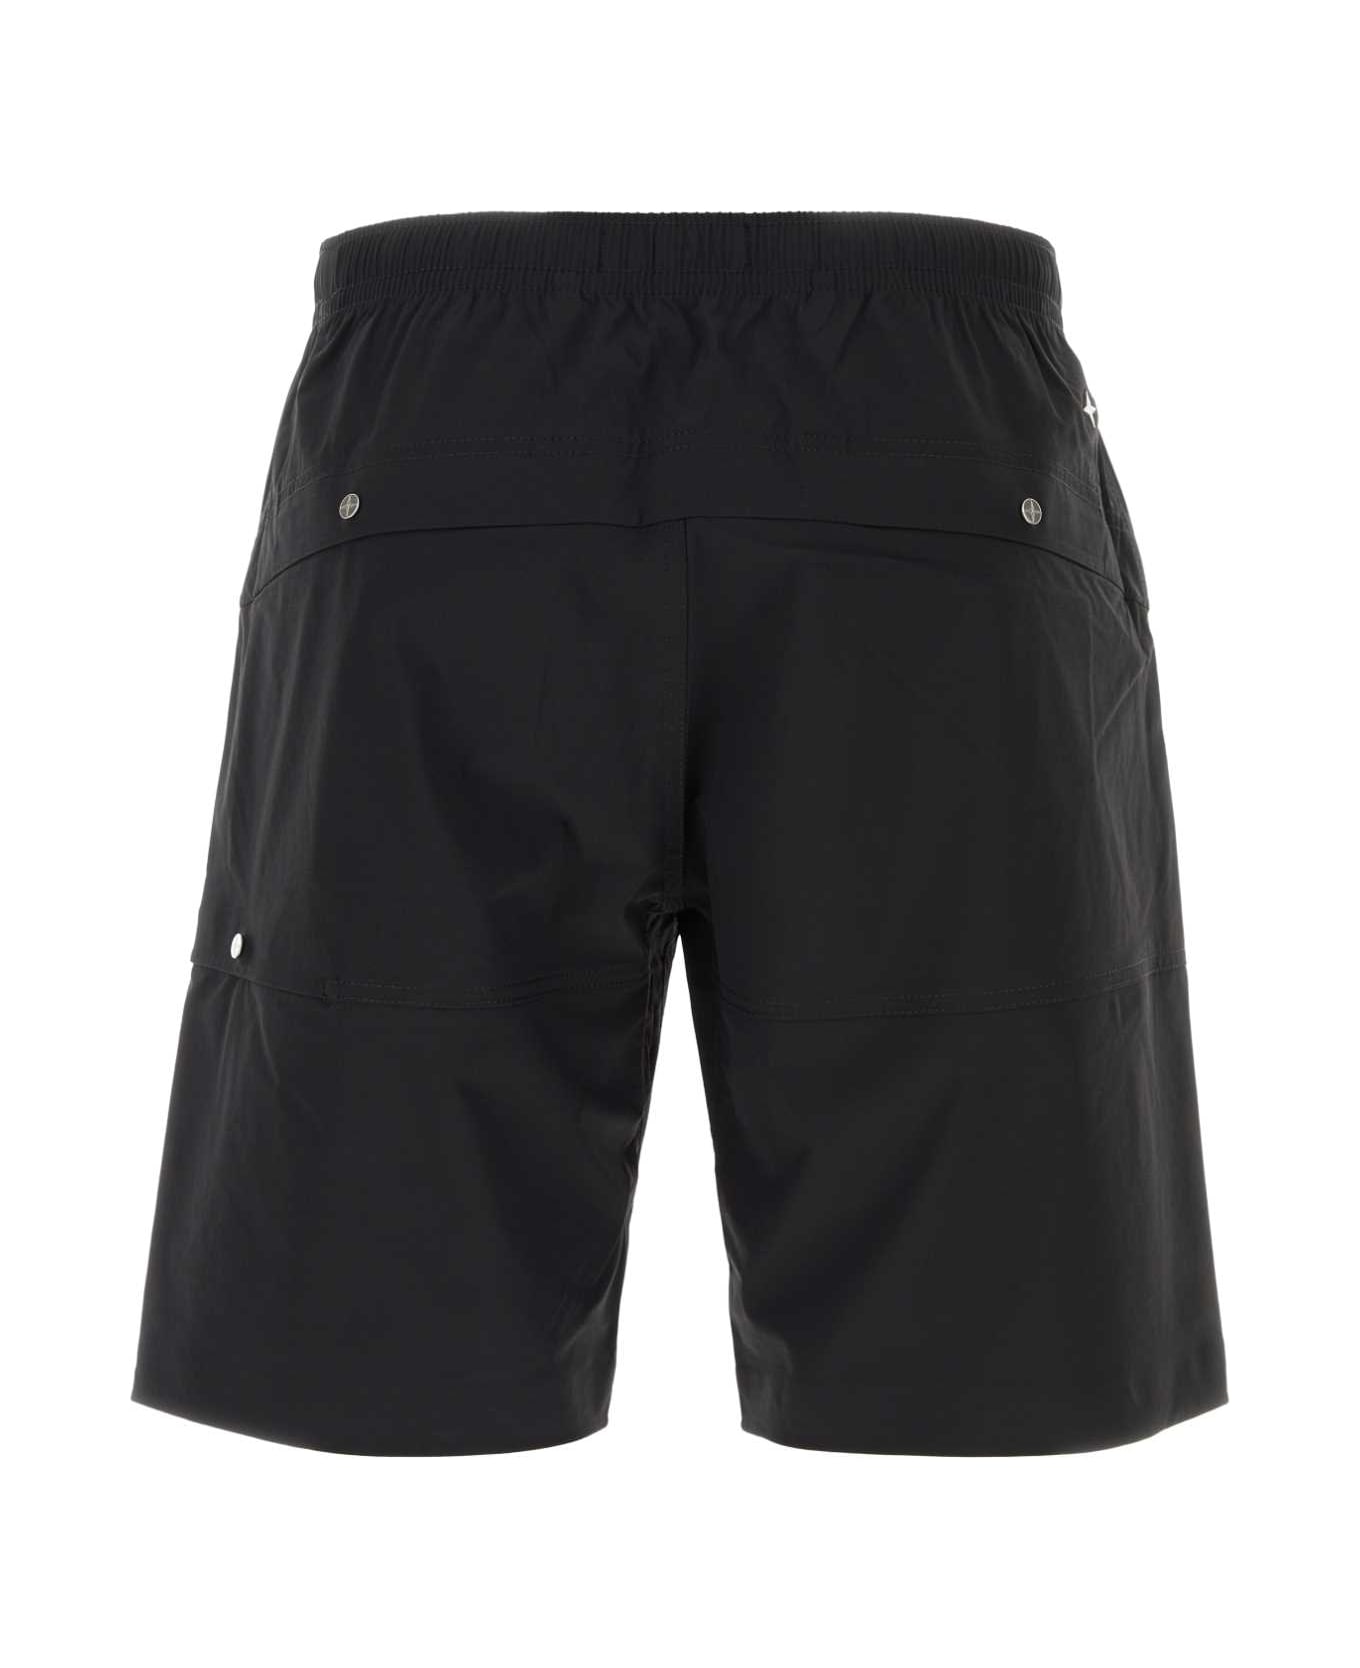 Stone Island Black Stretch Nylon Bermuda Shorts - BLK